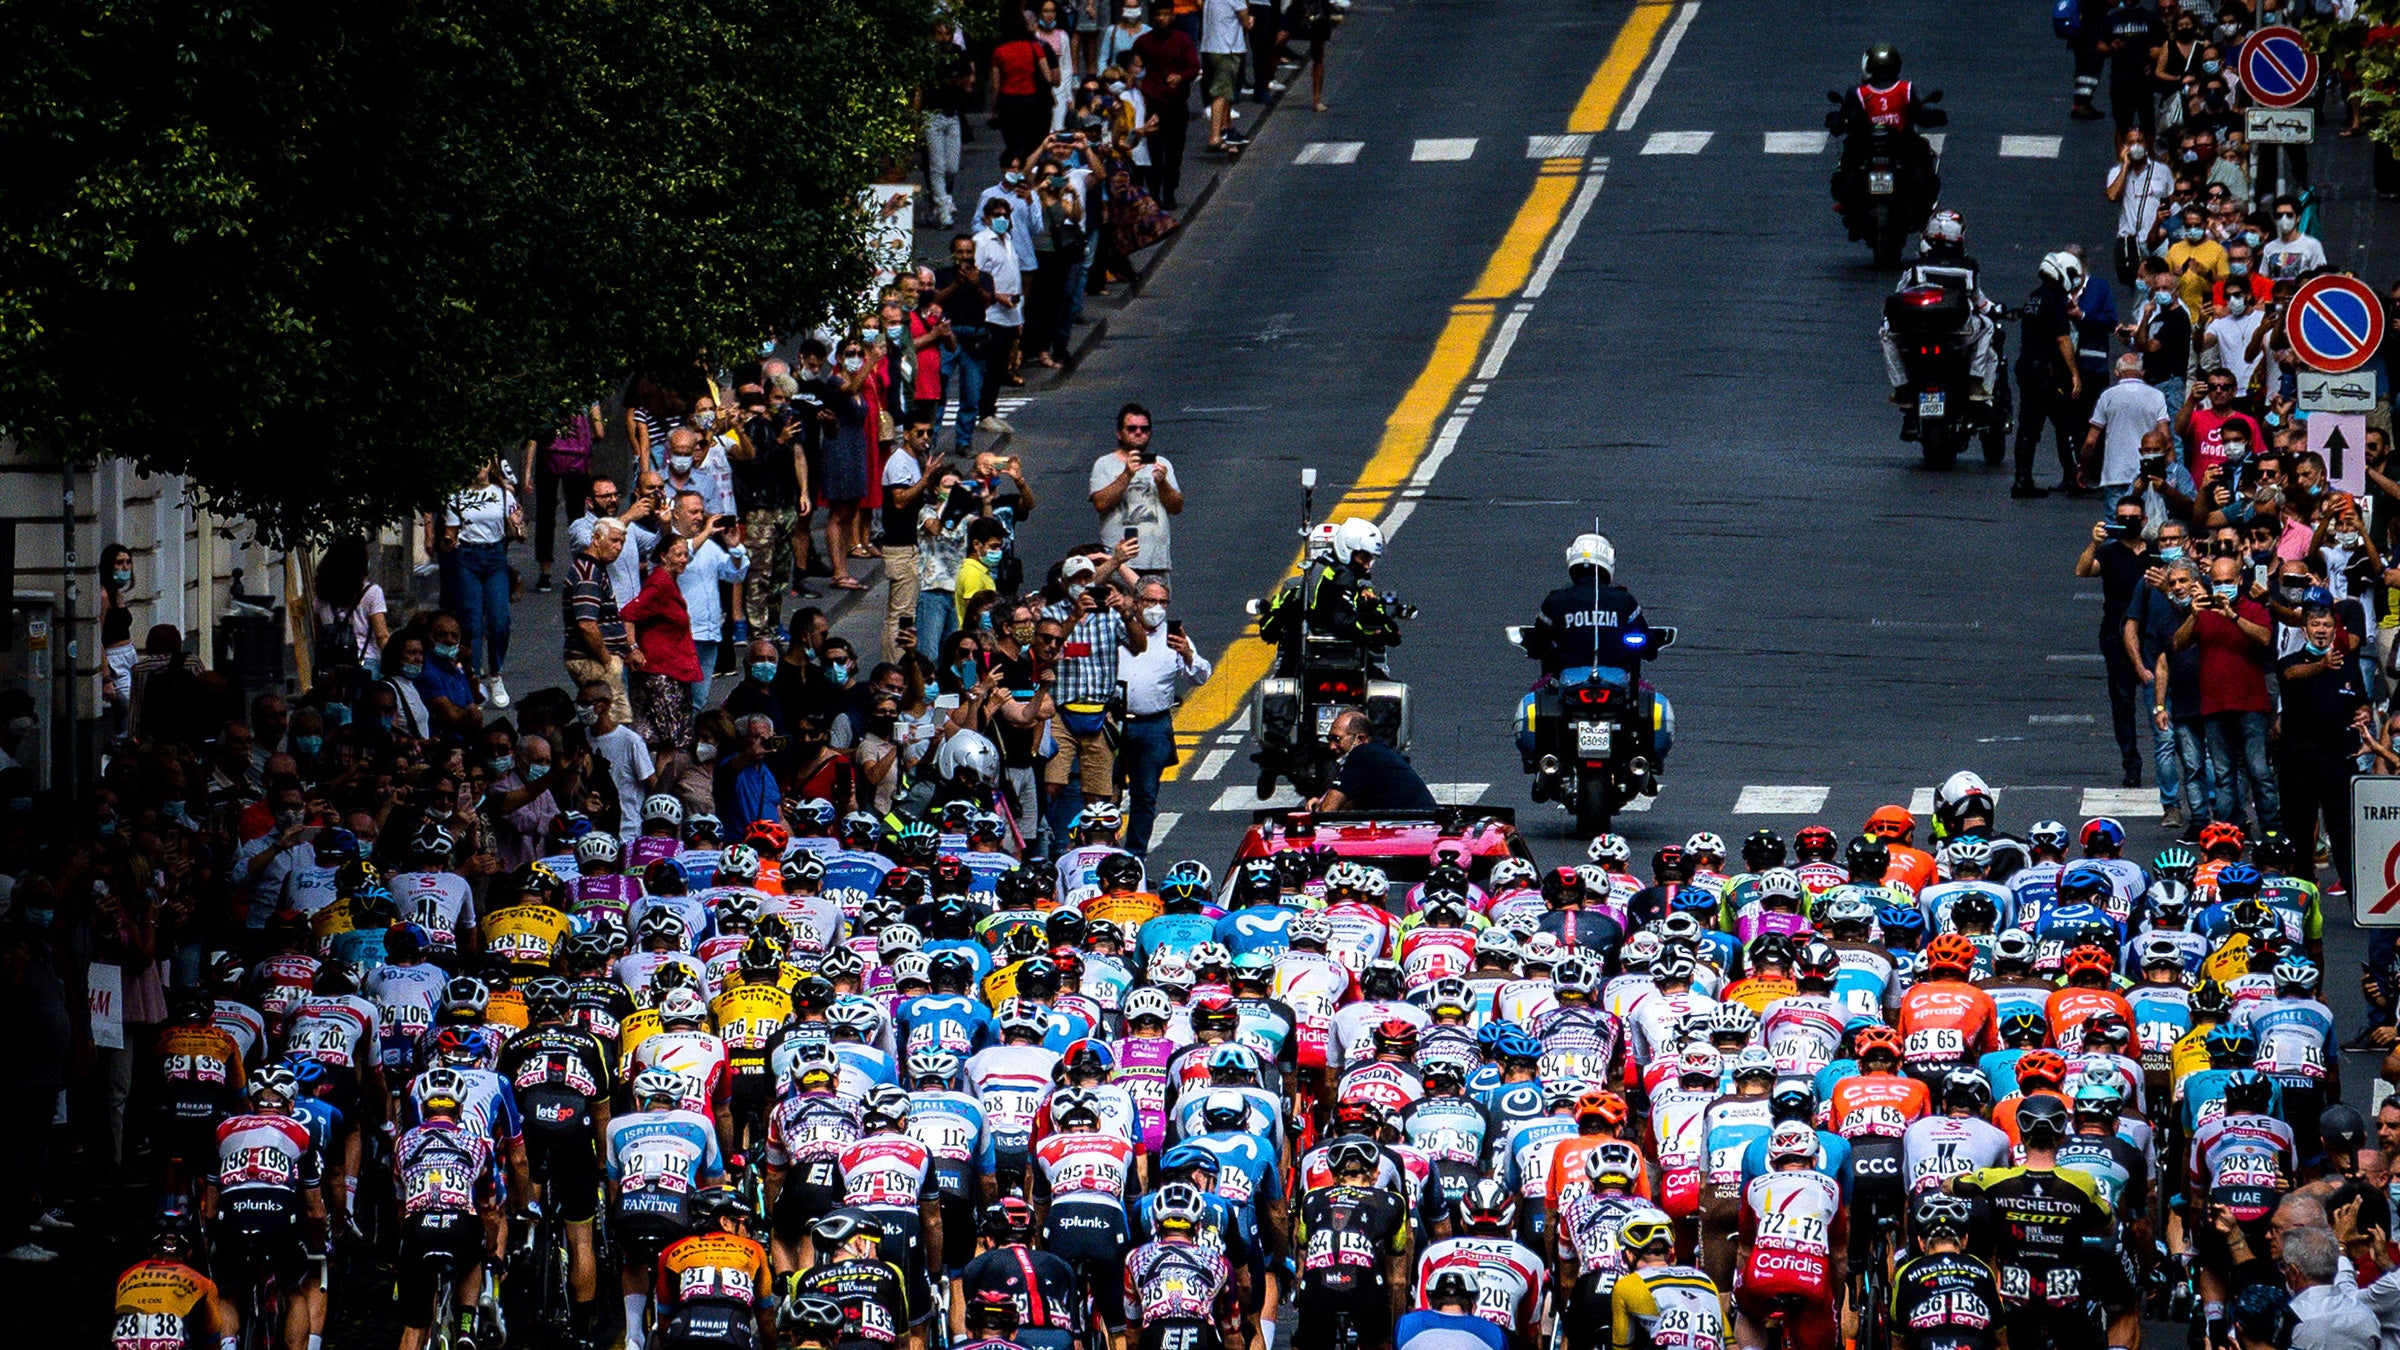 The Colnago Gioiello commemorates the Giro d'Italia with a whole